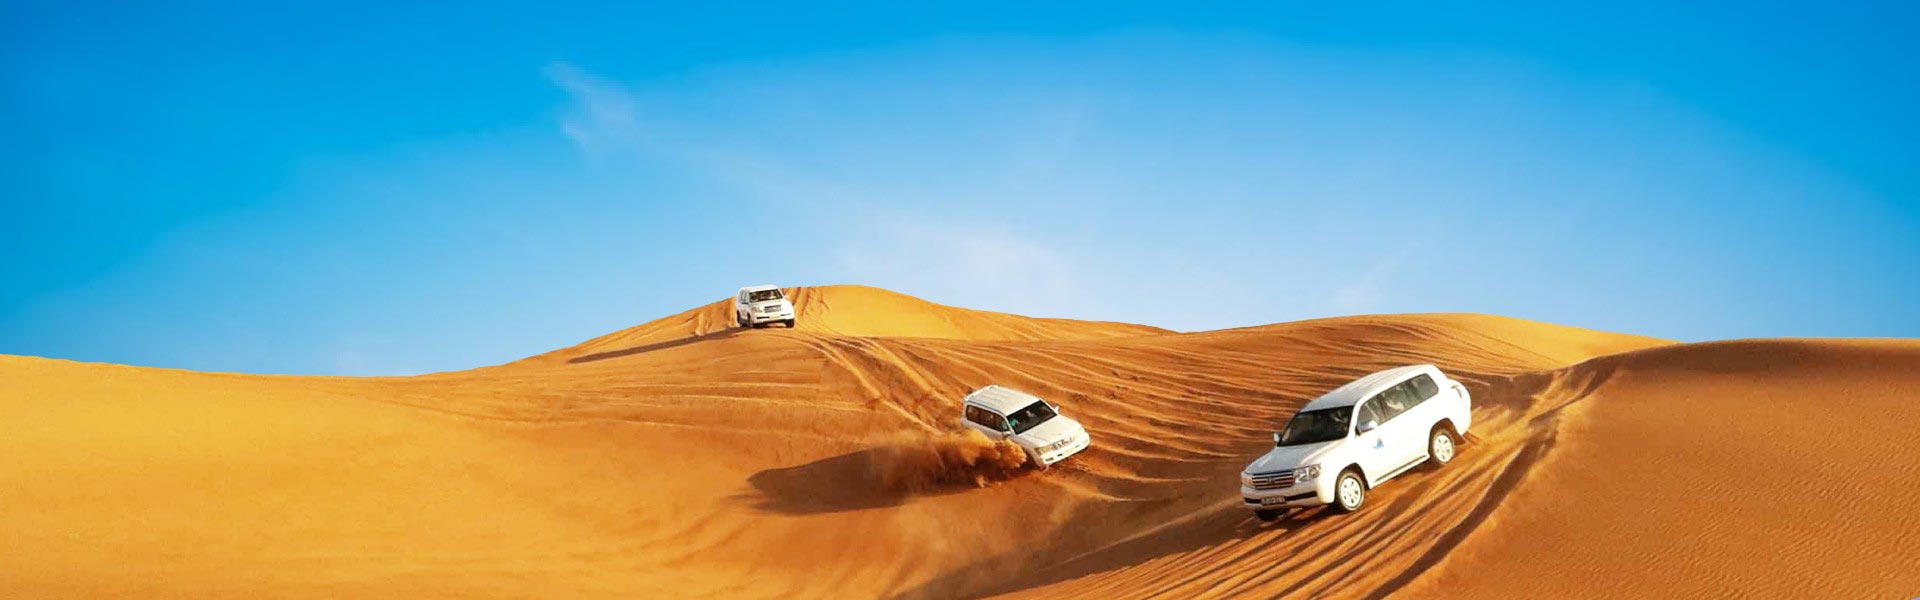 3 makina të bardha në shkretëtirën e Dubait duke marrë turistin për safari në shkretëtirë - Paketa Turistike